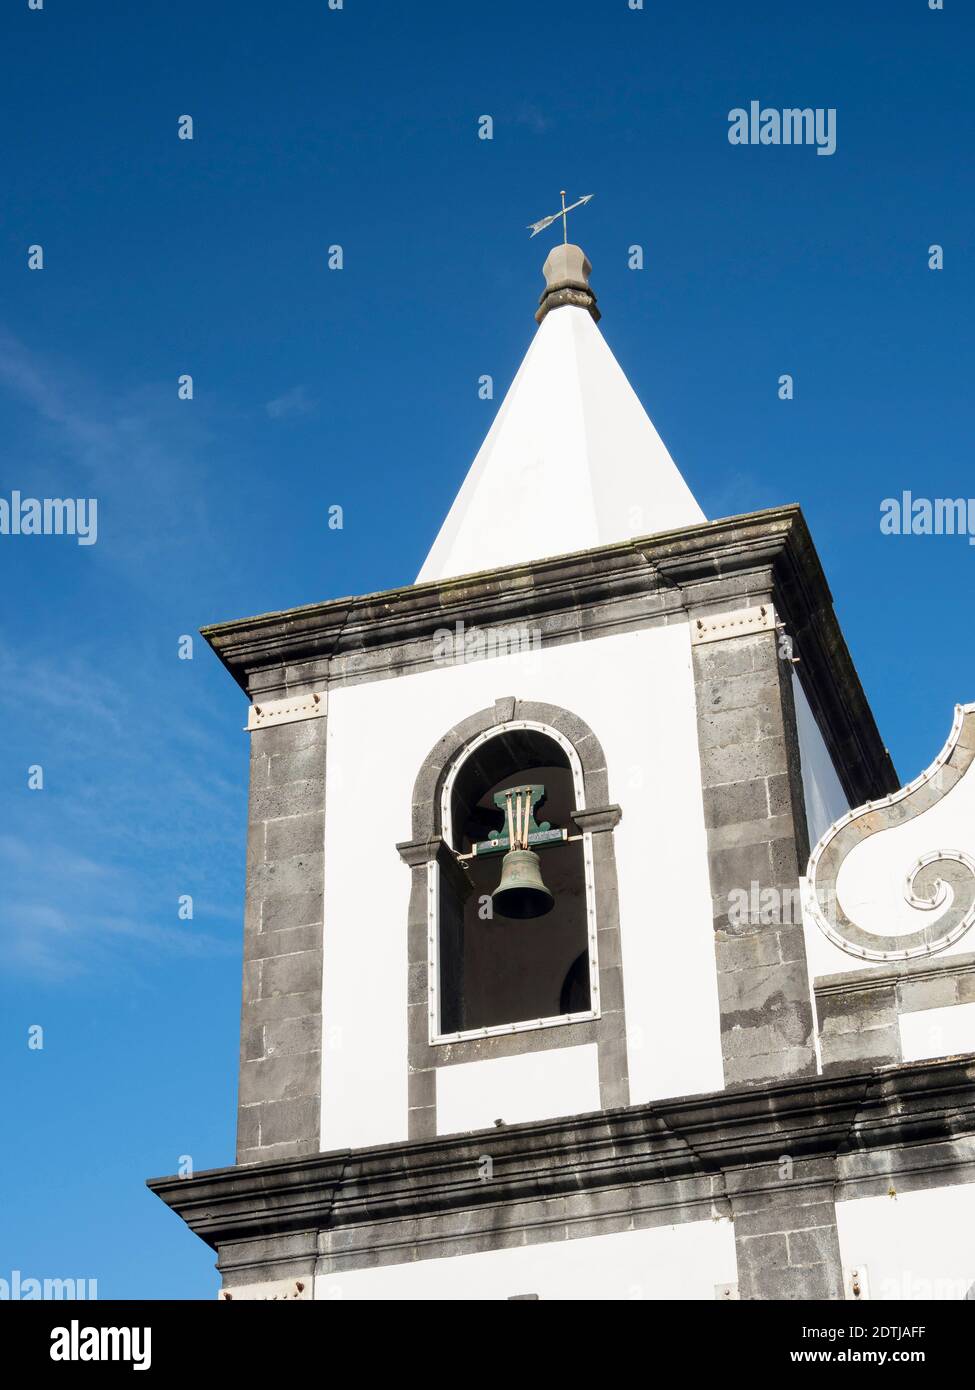 Chiesa Igreja de Nossa Senhora das Angustias. Horta, la città principale di Faial. Isola di Faial, un'isola delle Azzorre (Ilhas dos Acores) nell'Atlantico Foto Stock